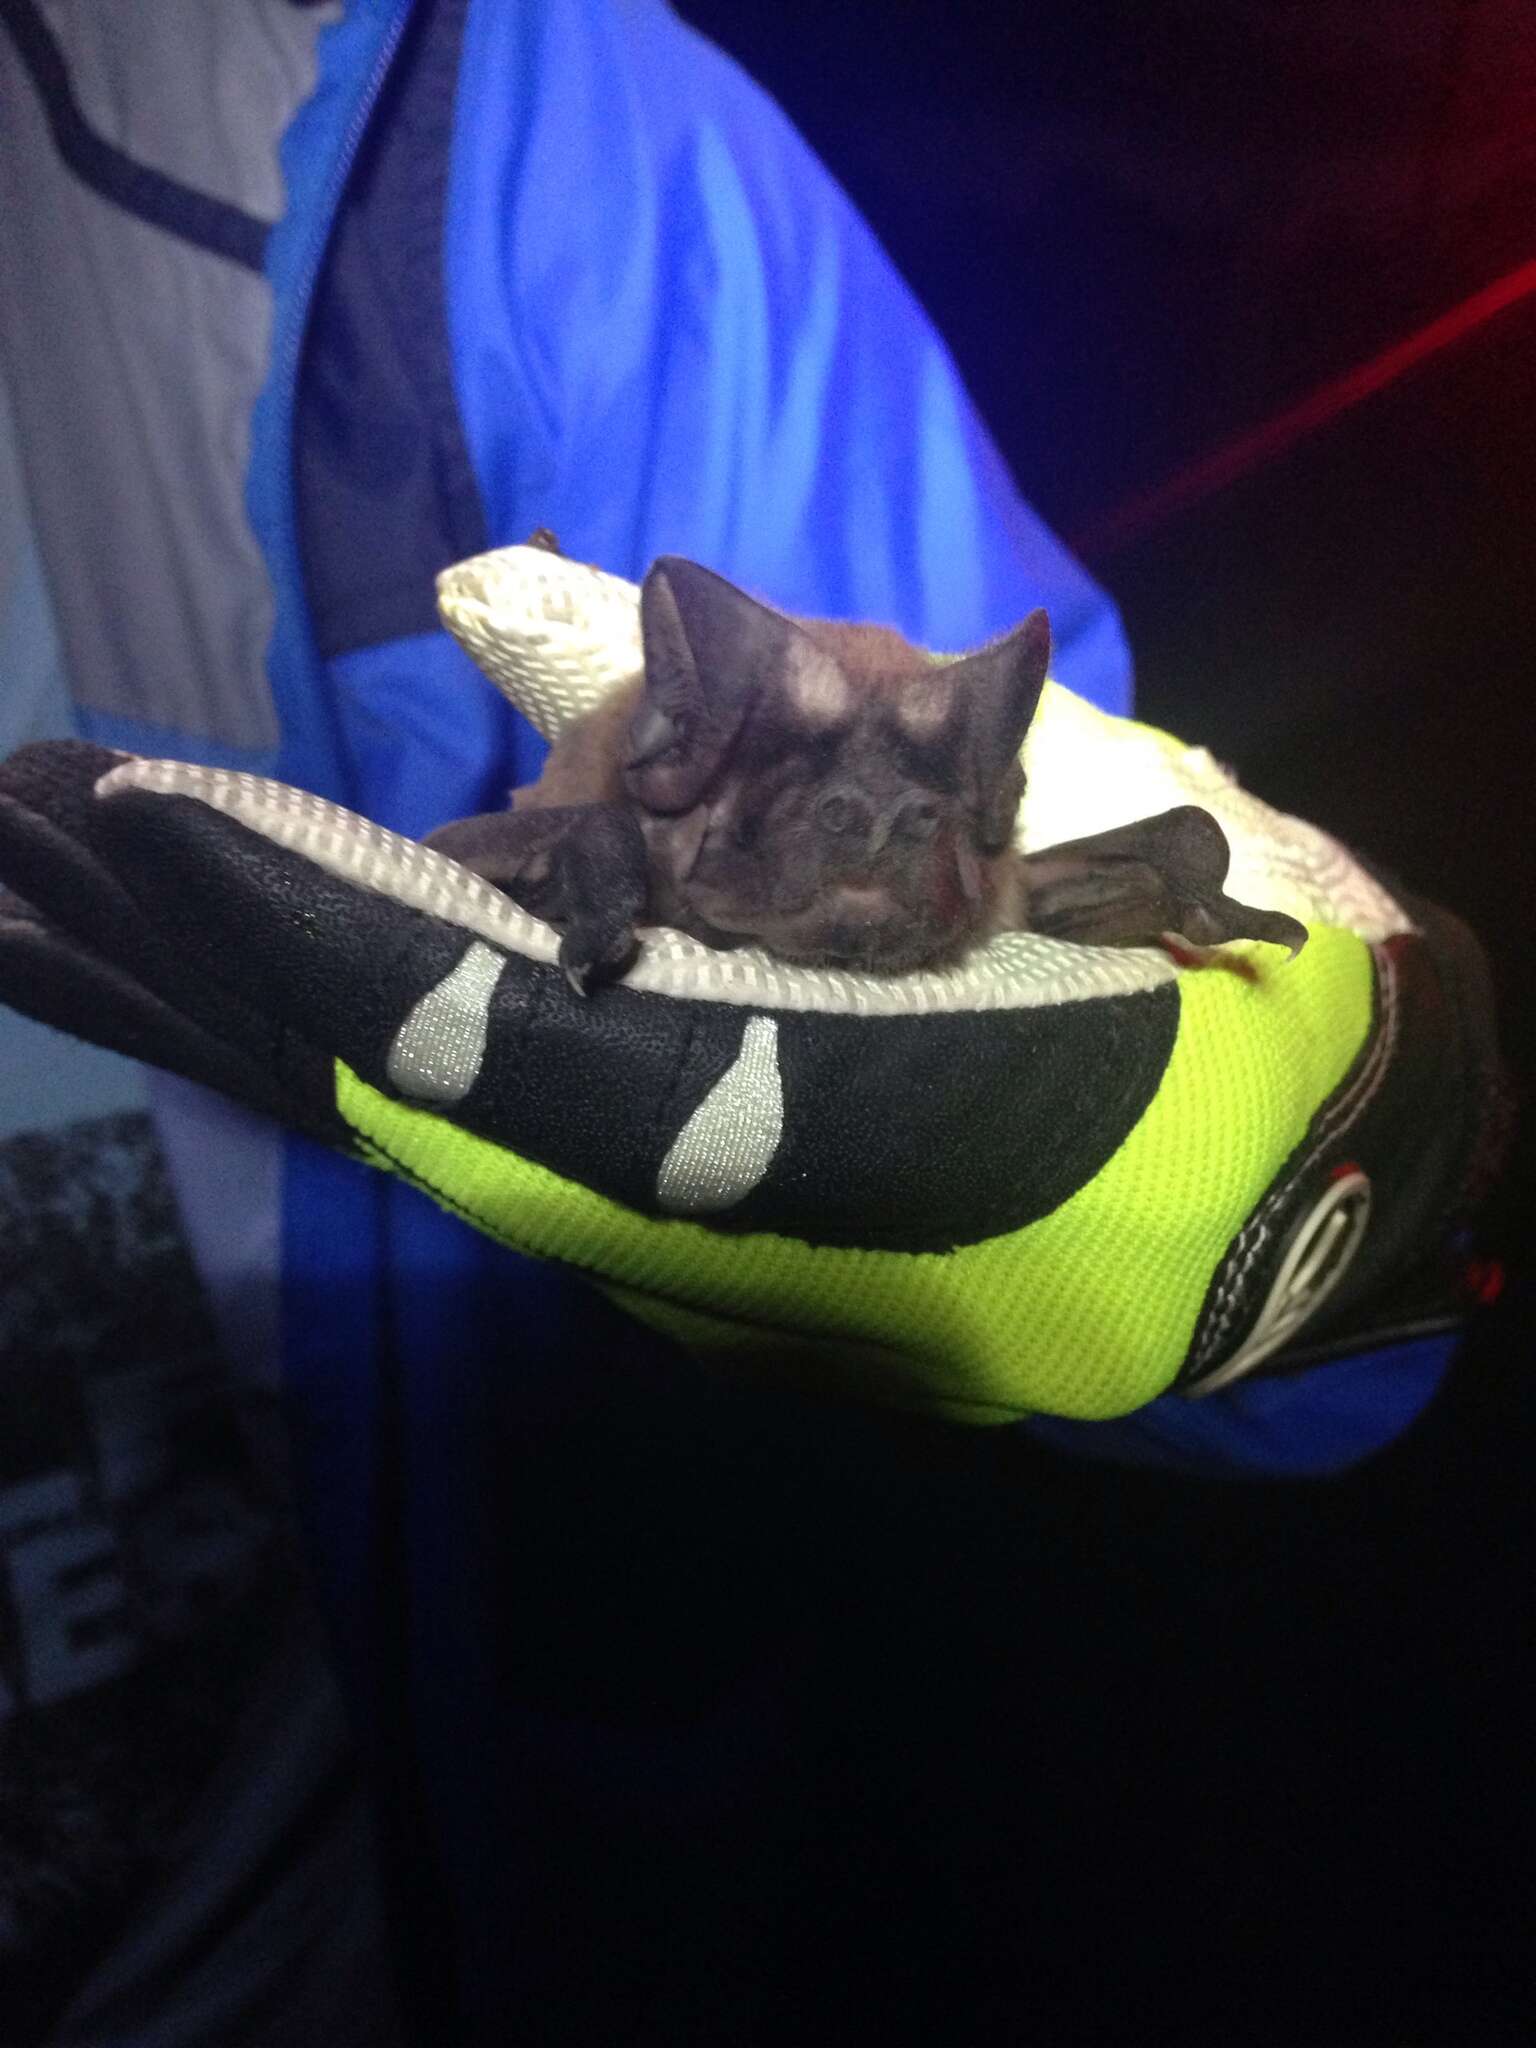 Image of Florida Bonneted Bat